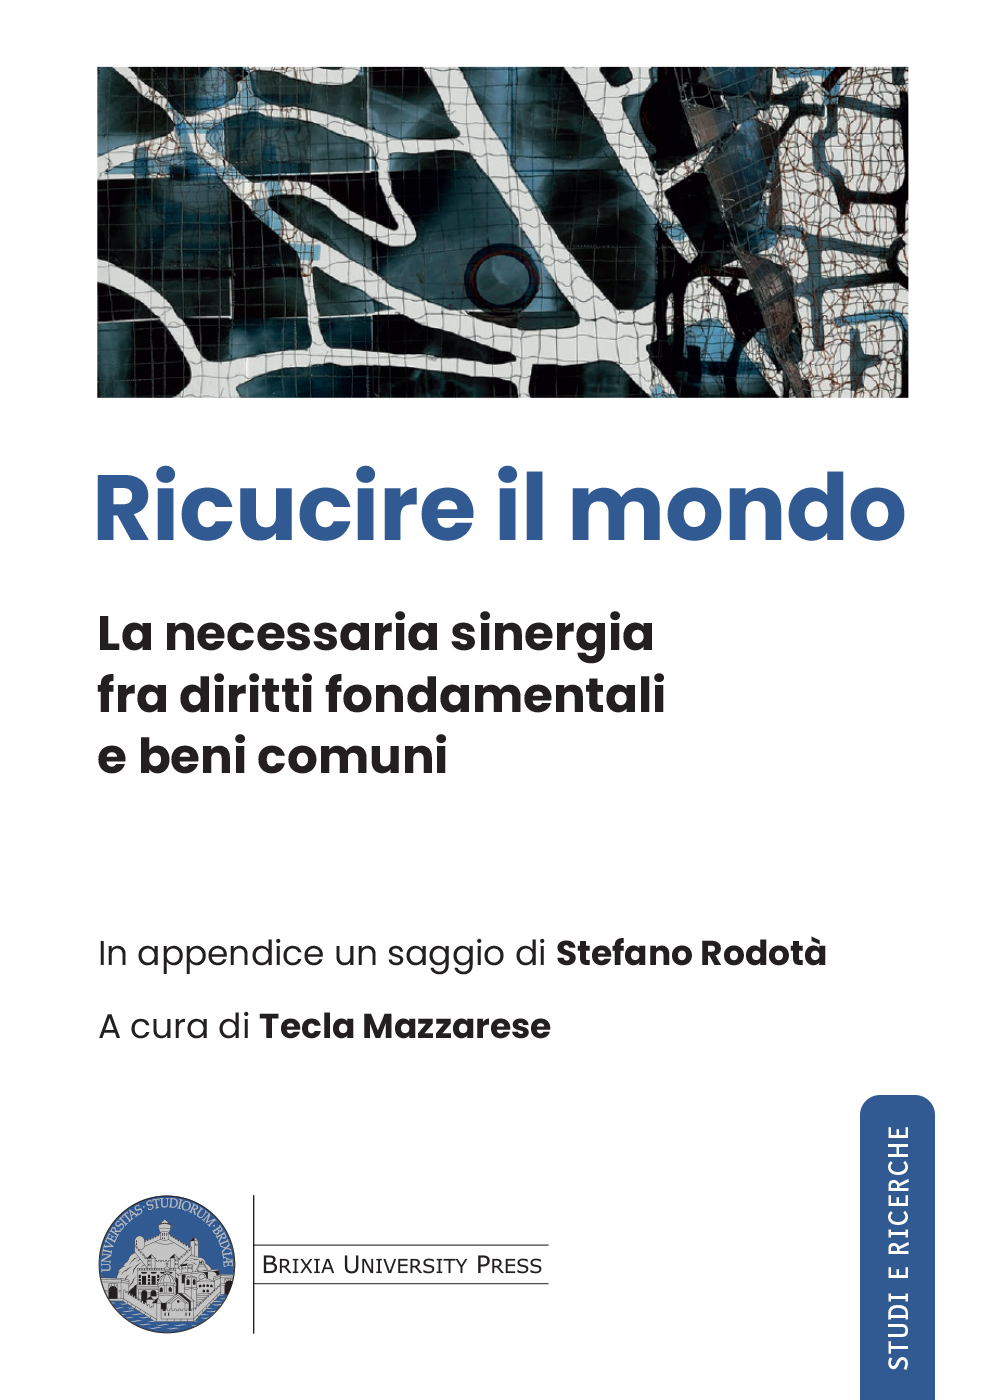 Ricucire il mondo - Bologna University Press